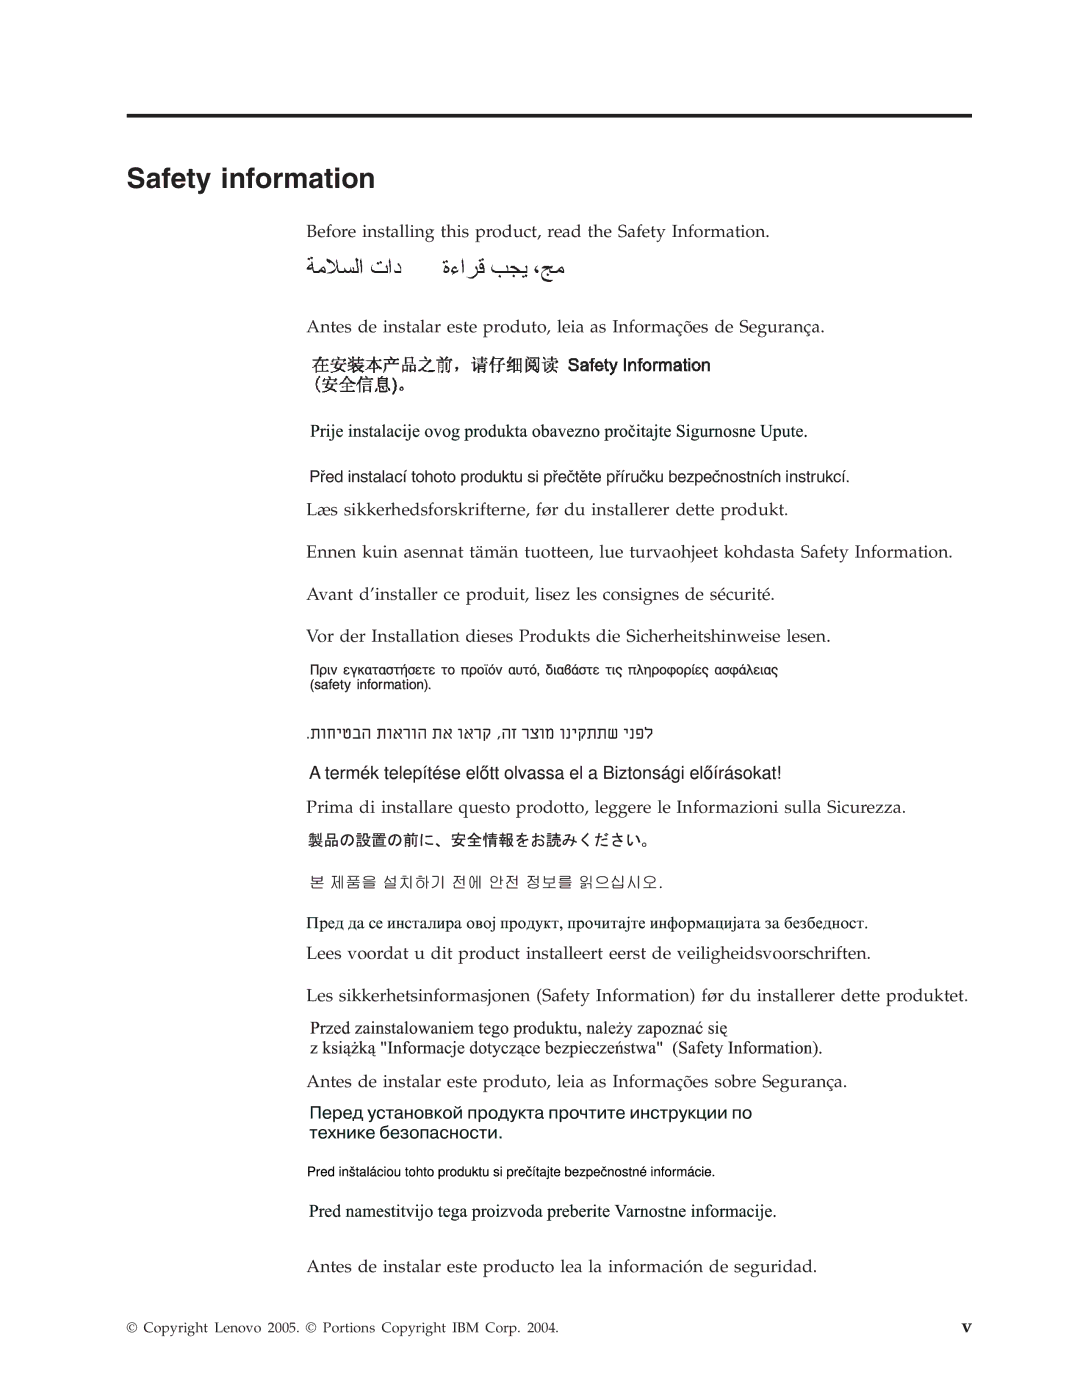 Lenovo E500 manual Safety information 